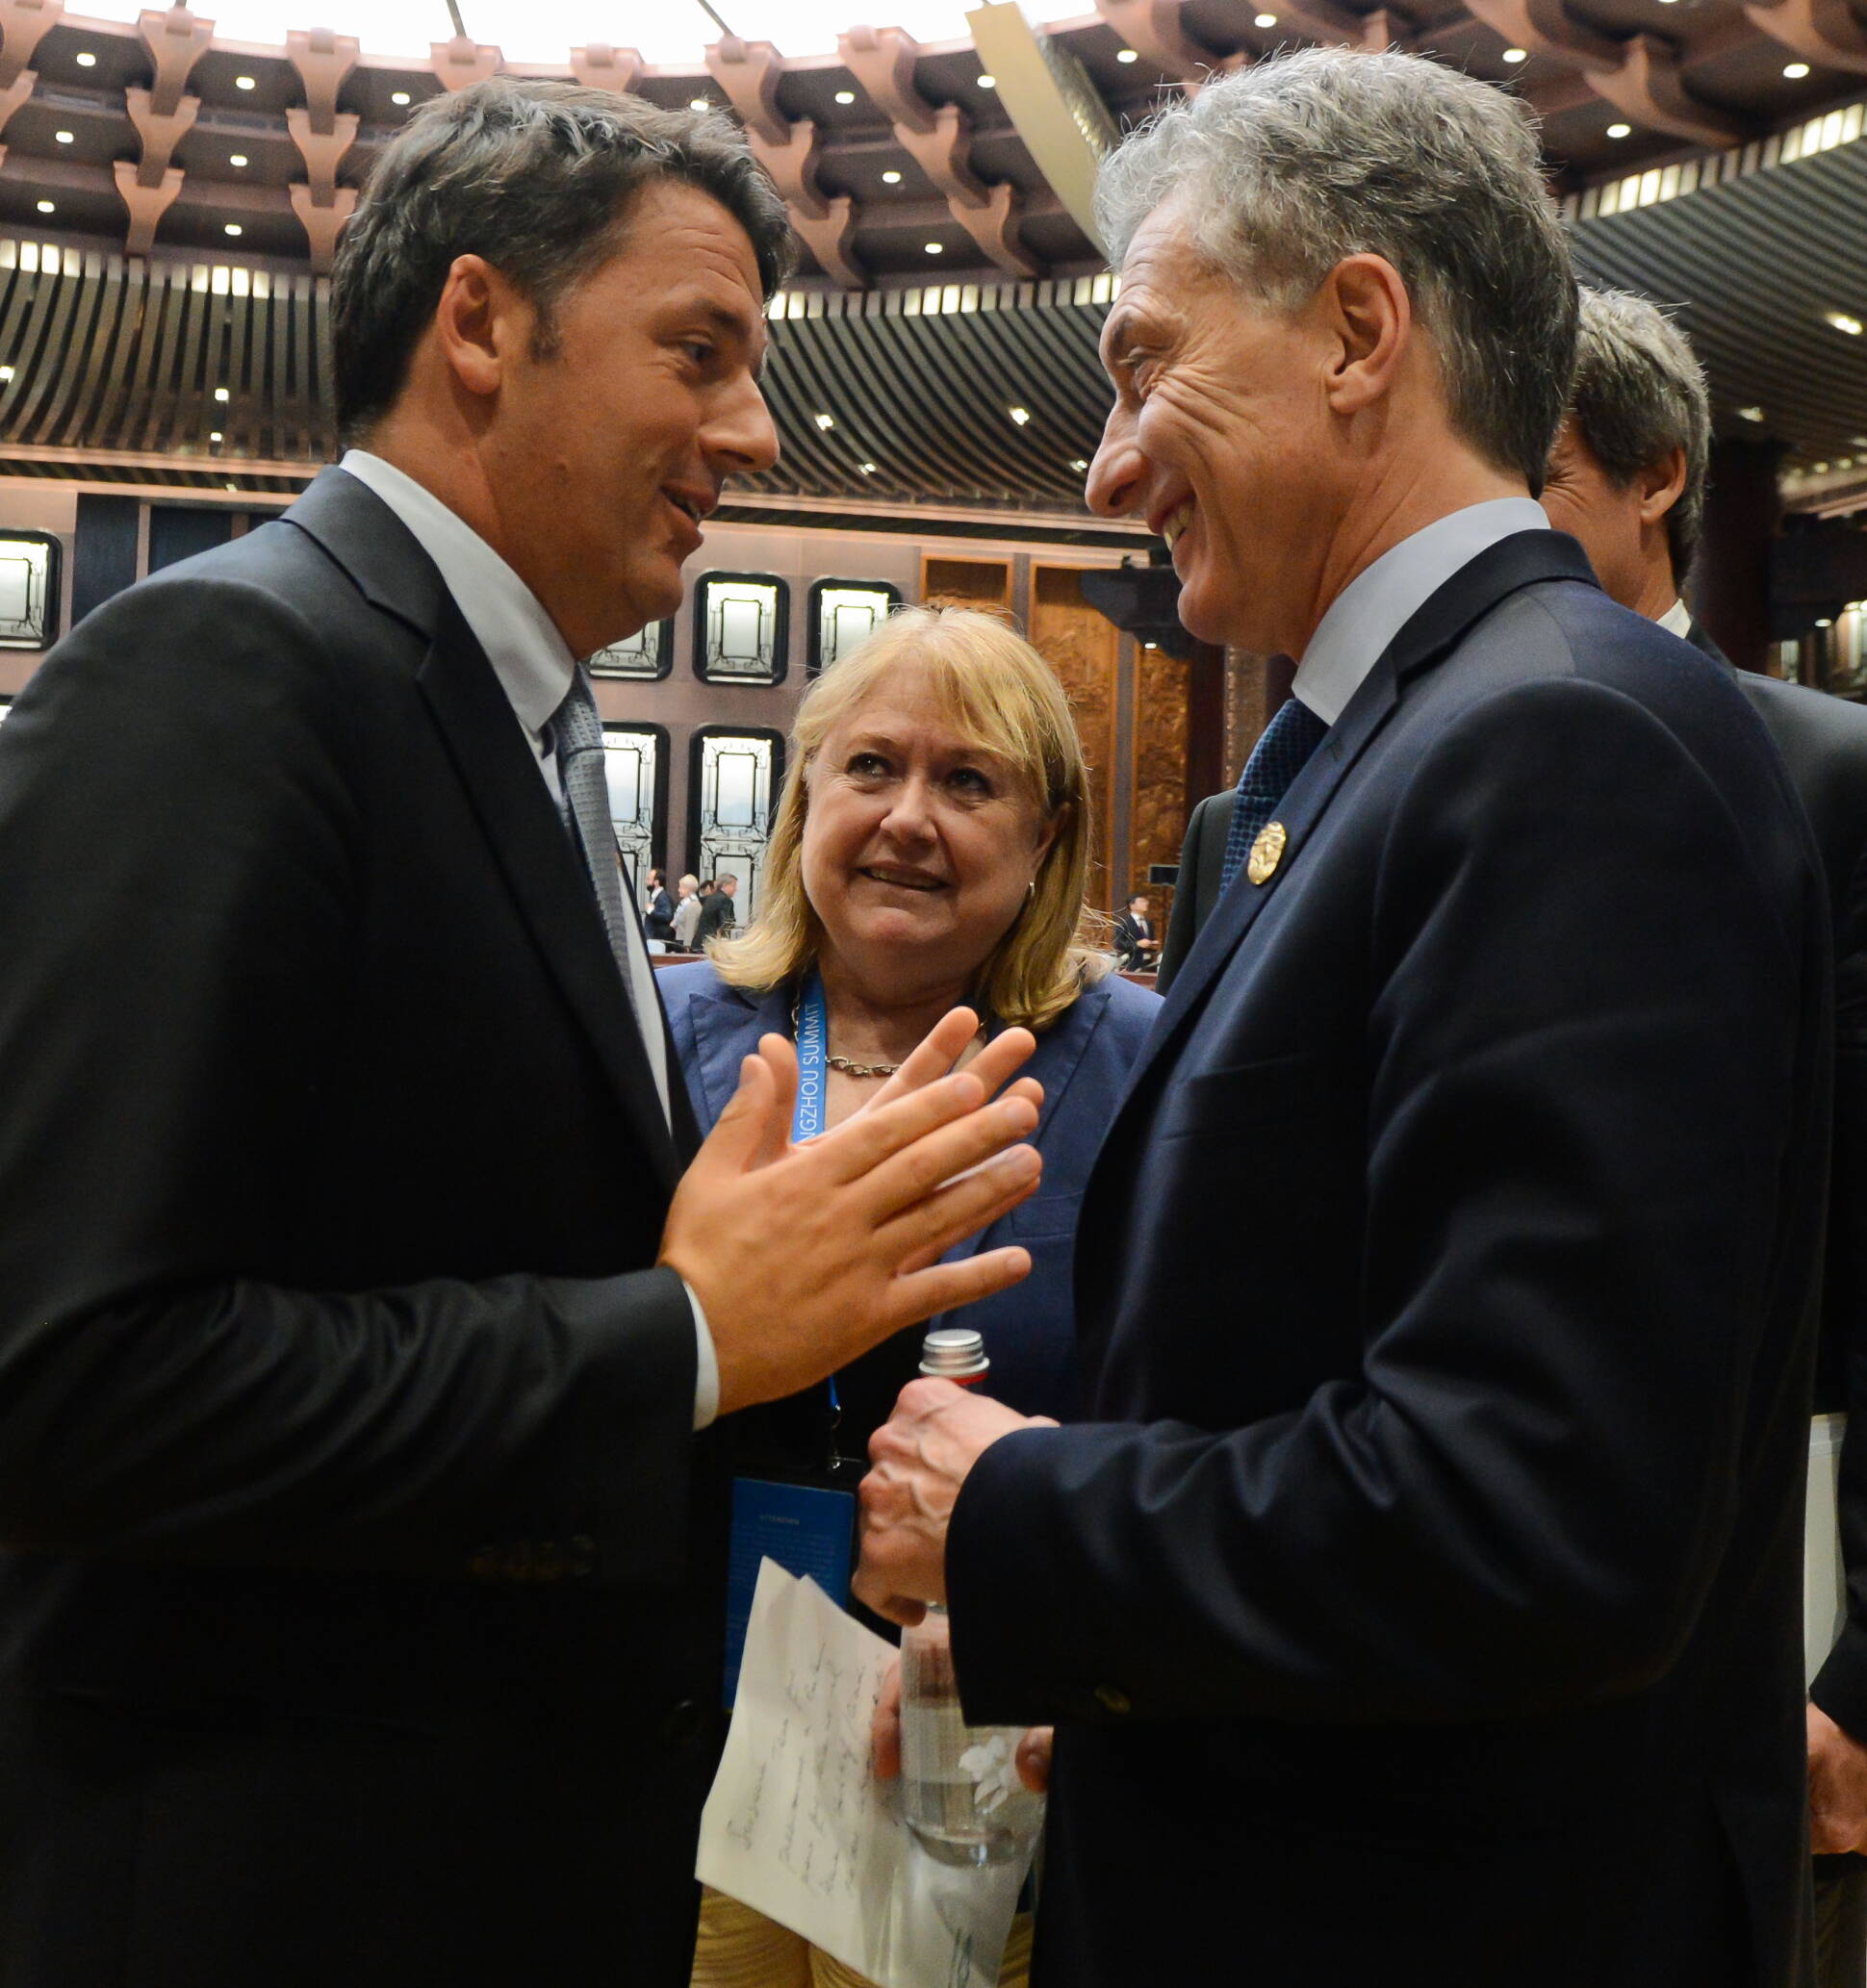 El Presidente Mauricio Macri con Matteo Renzi y Recep Erdogan